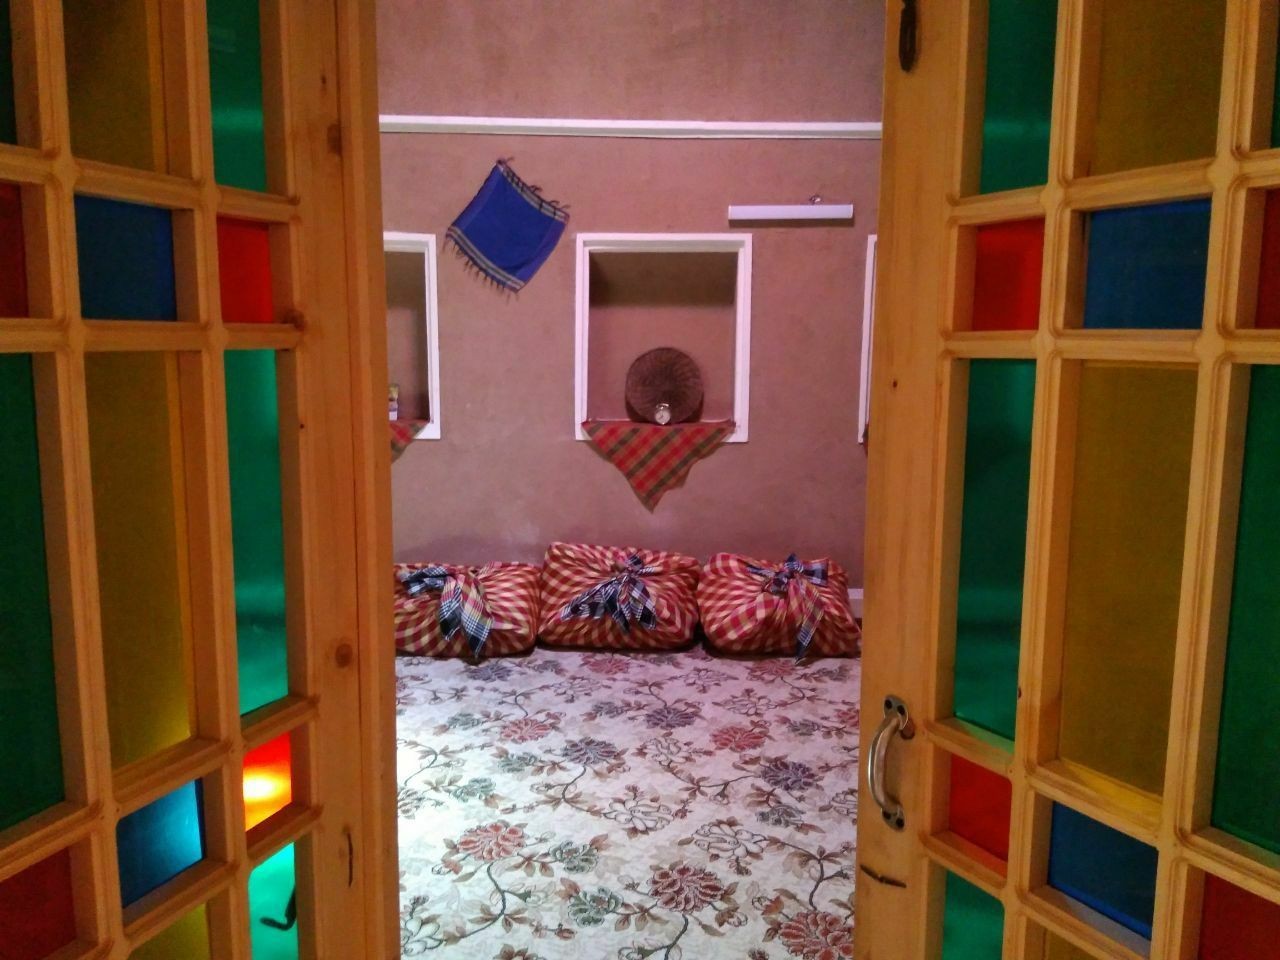 بومگردی اجاره اقامتگاه بومگردی سنتی امرداد در شاهدیه یزد